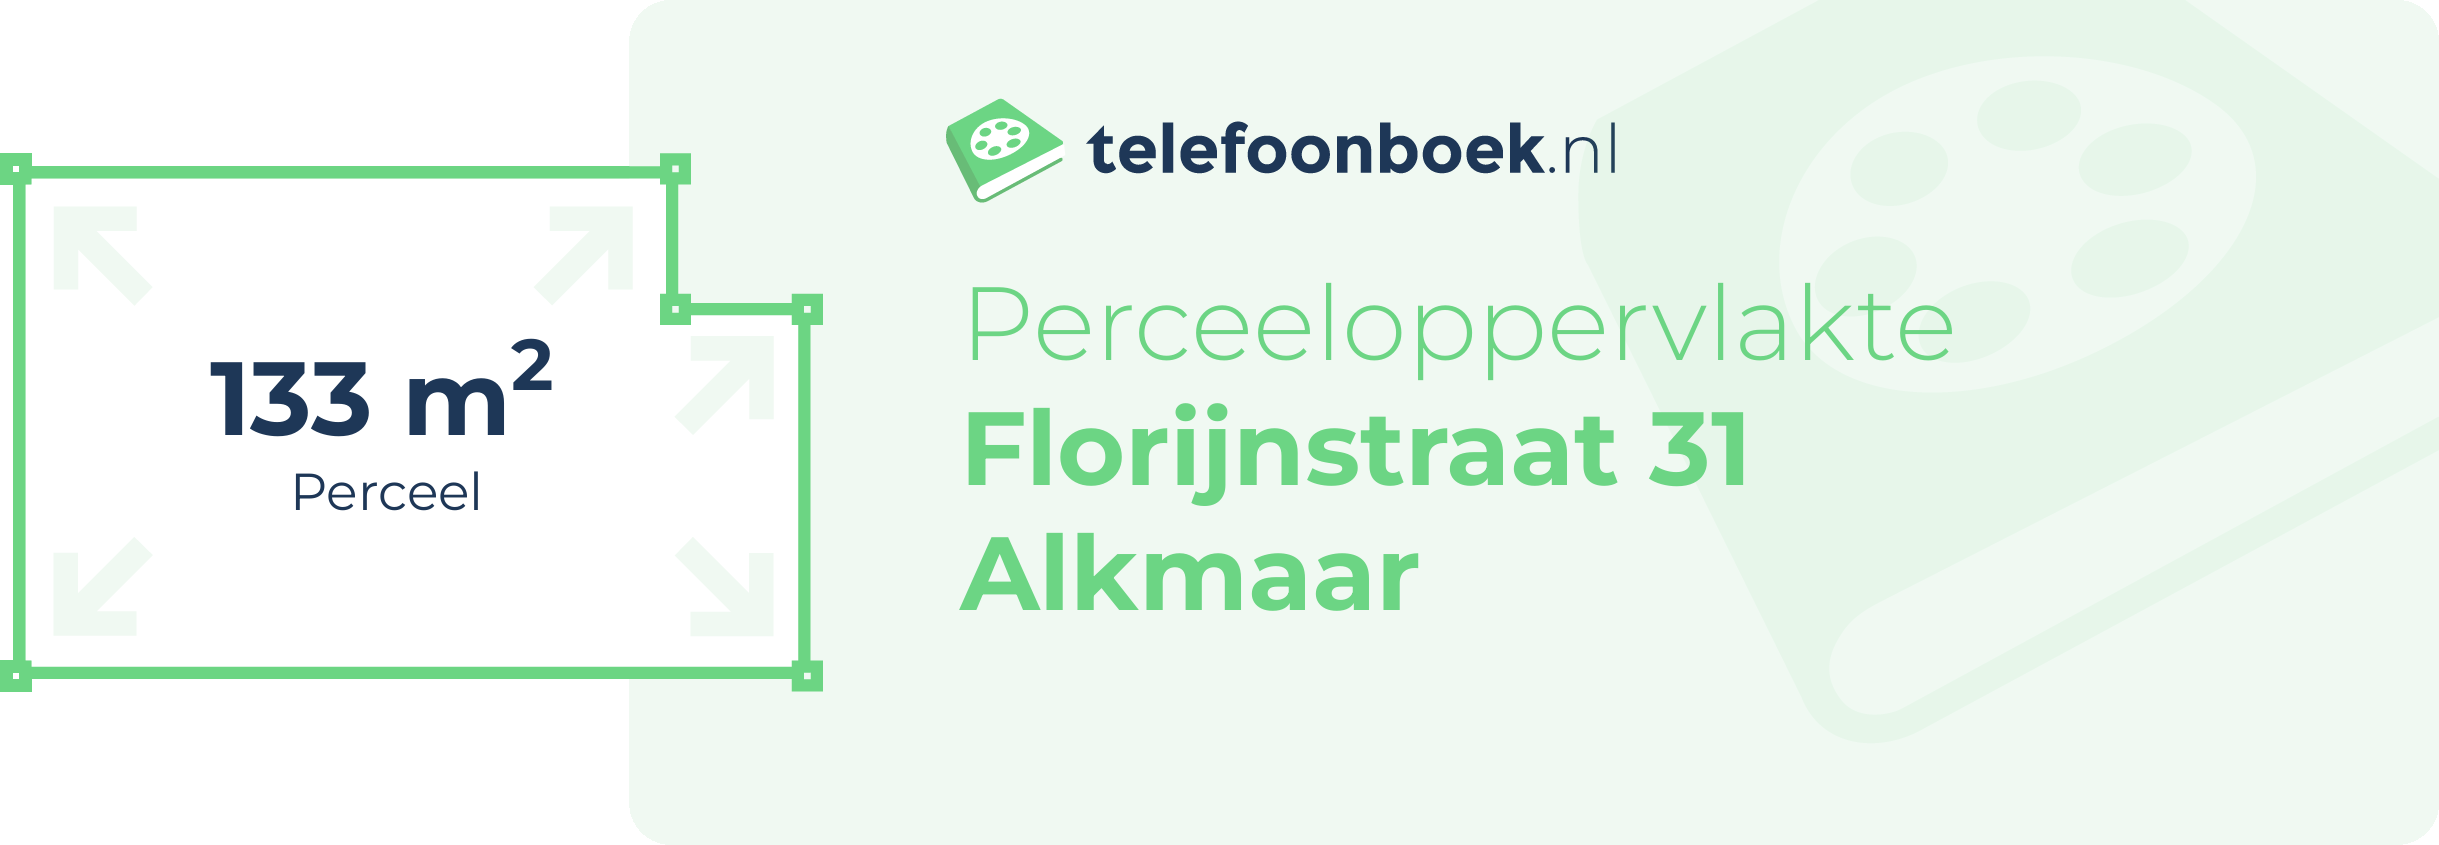 Perceeloppervlakte Florijnstraat 31 Alkmaar